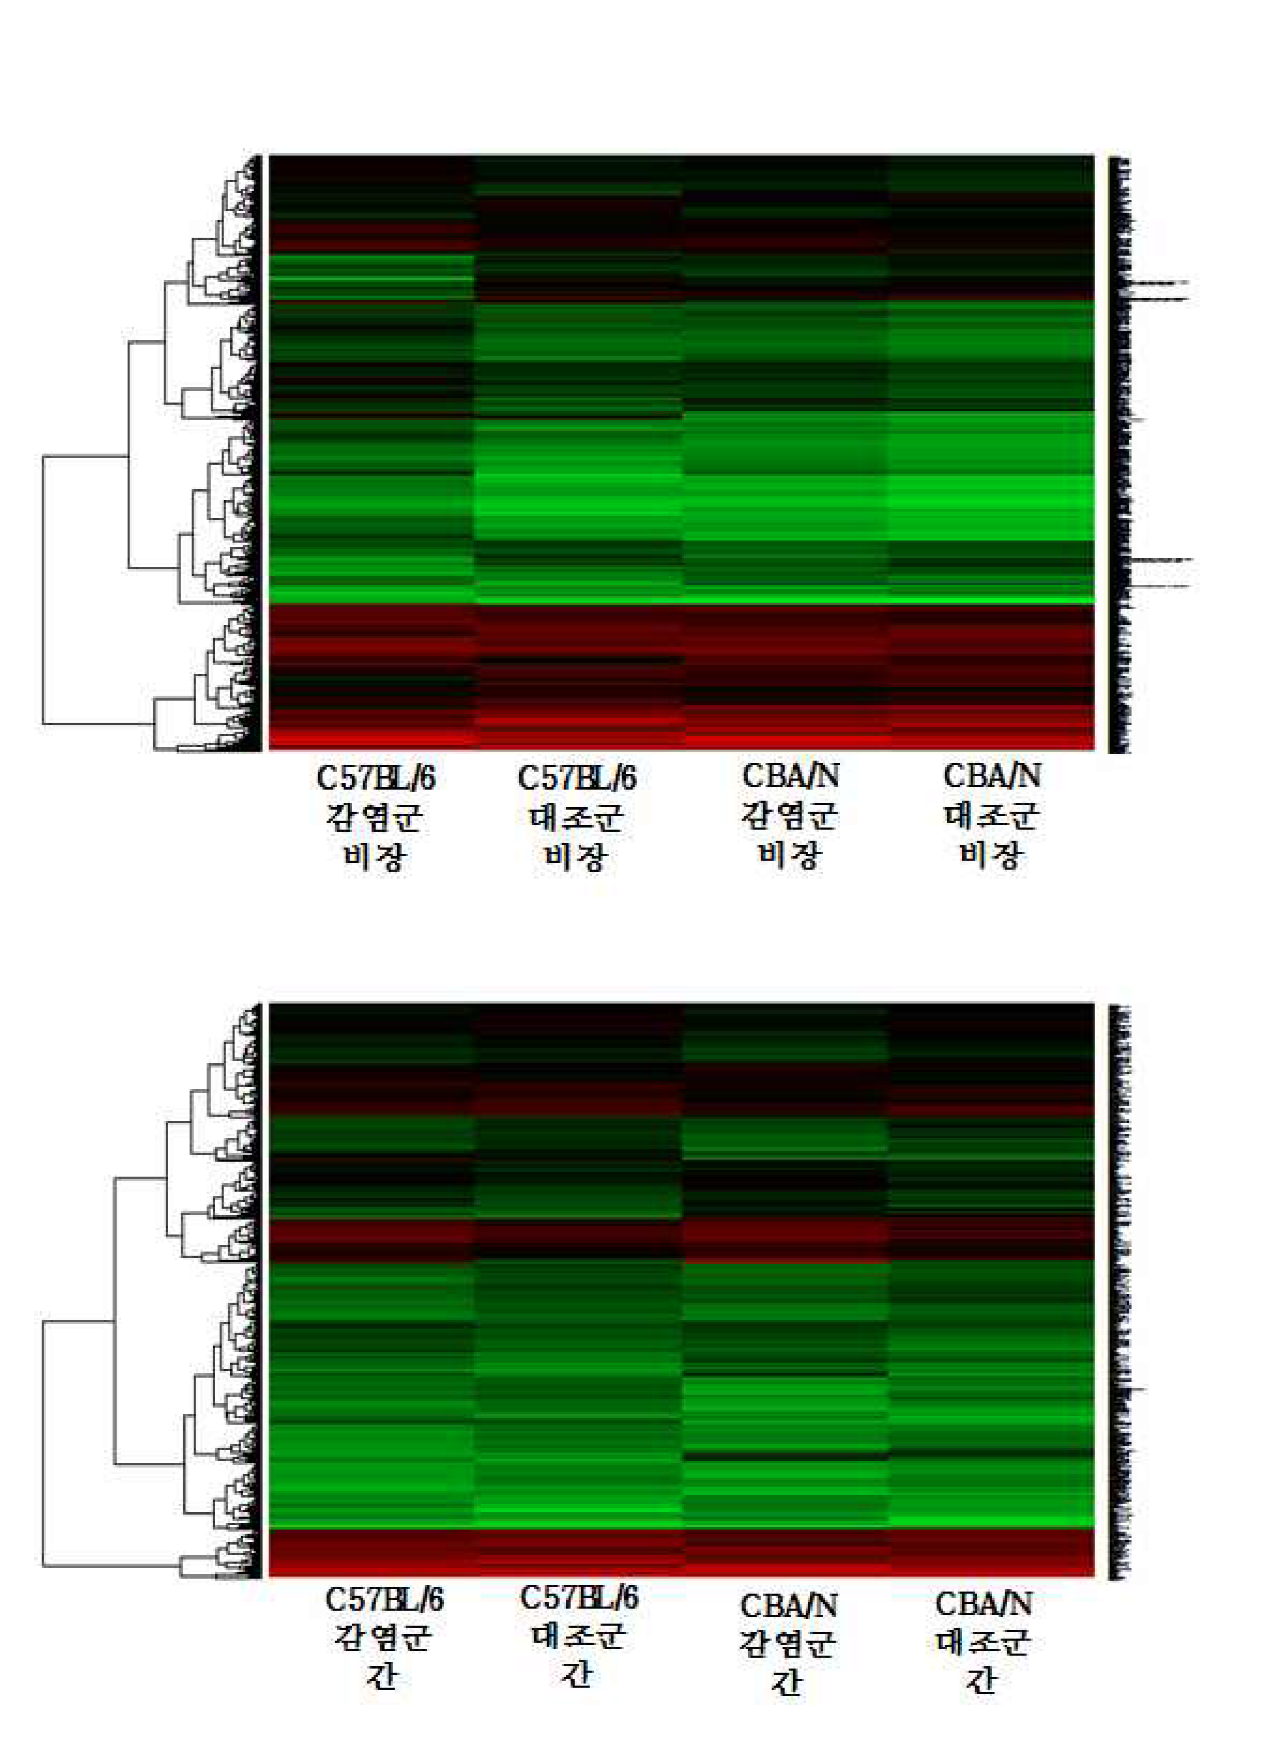 간흡충 감염에 의한 C57BL/6, CBA/N 마우스의 비장 및 간 내 유전자 발현 패턴 비교